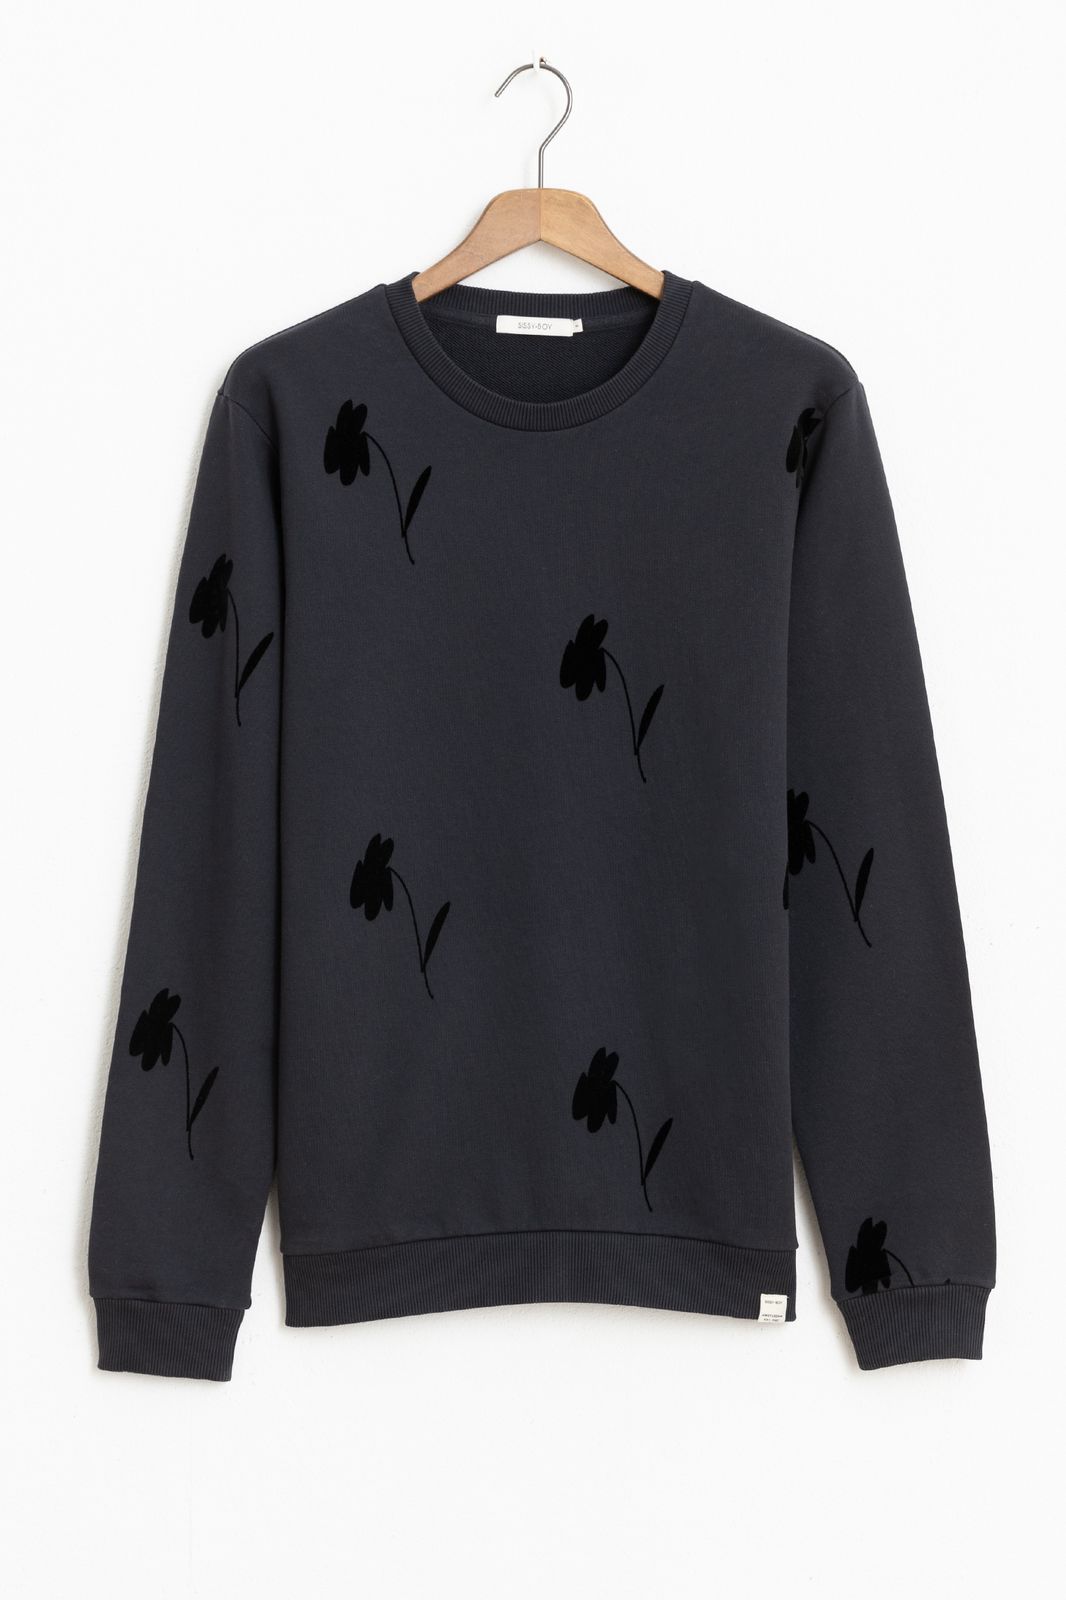 Sweater mit Blumenmuster - dunkelgrau